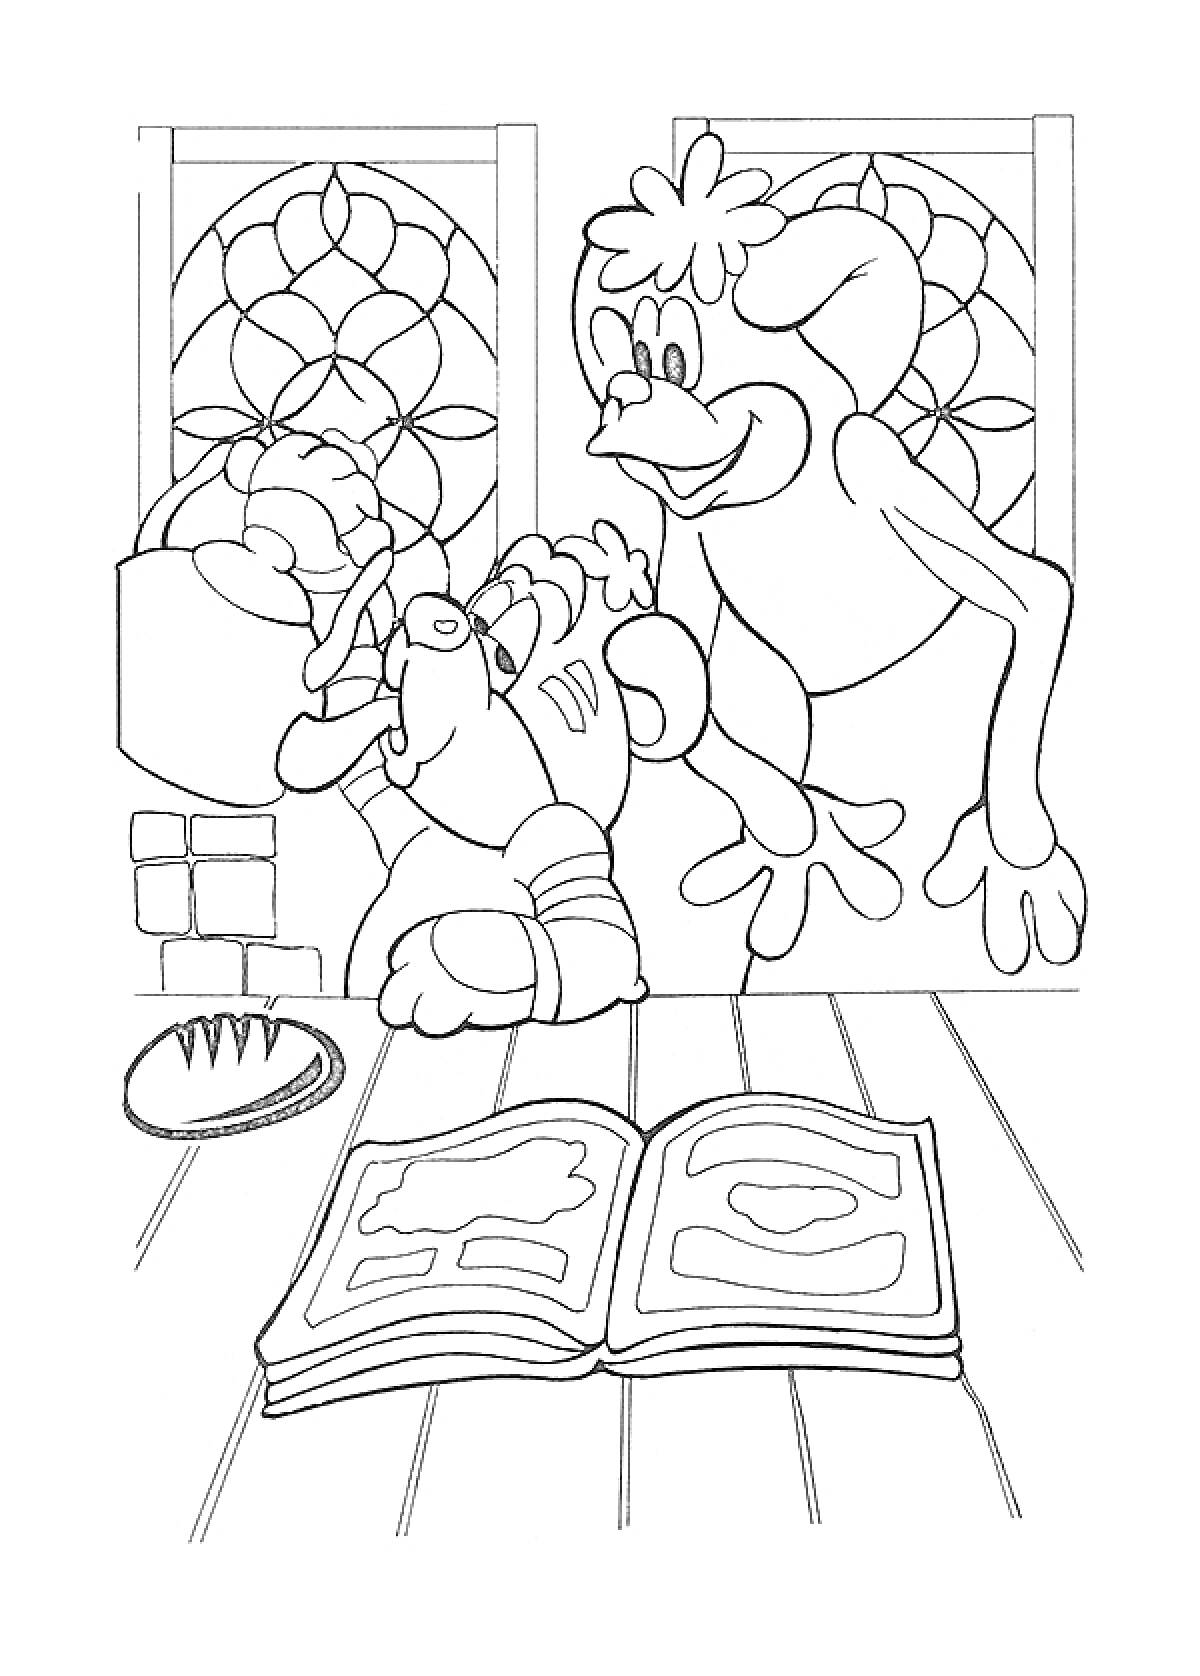 Два персонажа в комнате с витражными окнами, один читает книгу, рядом лежит буханка хлеба